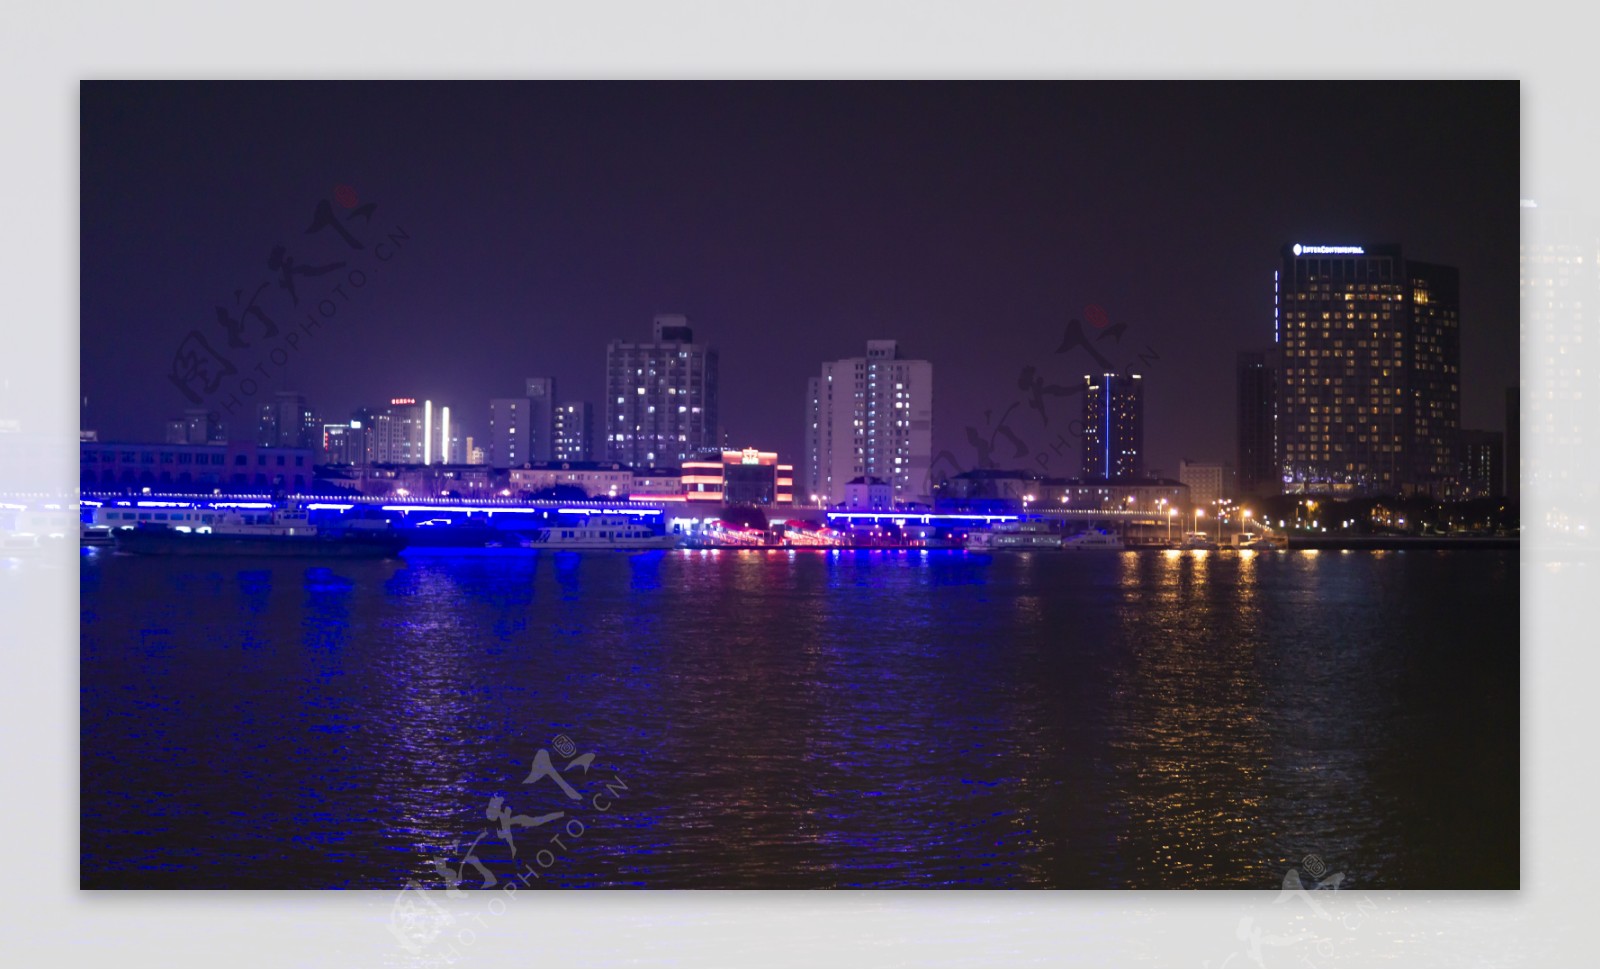 城市夜景系列高清图片